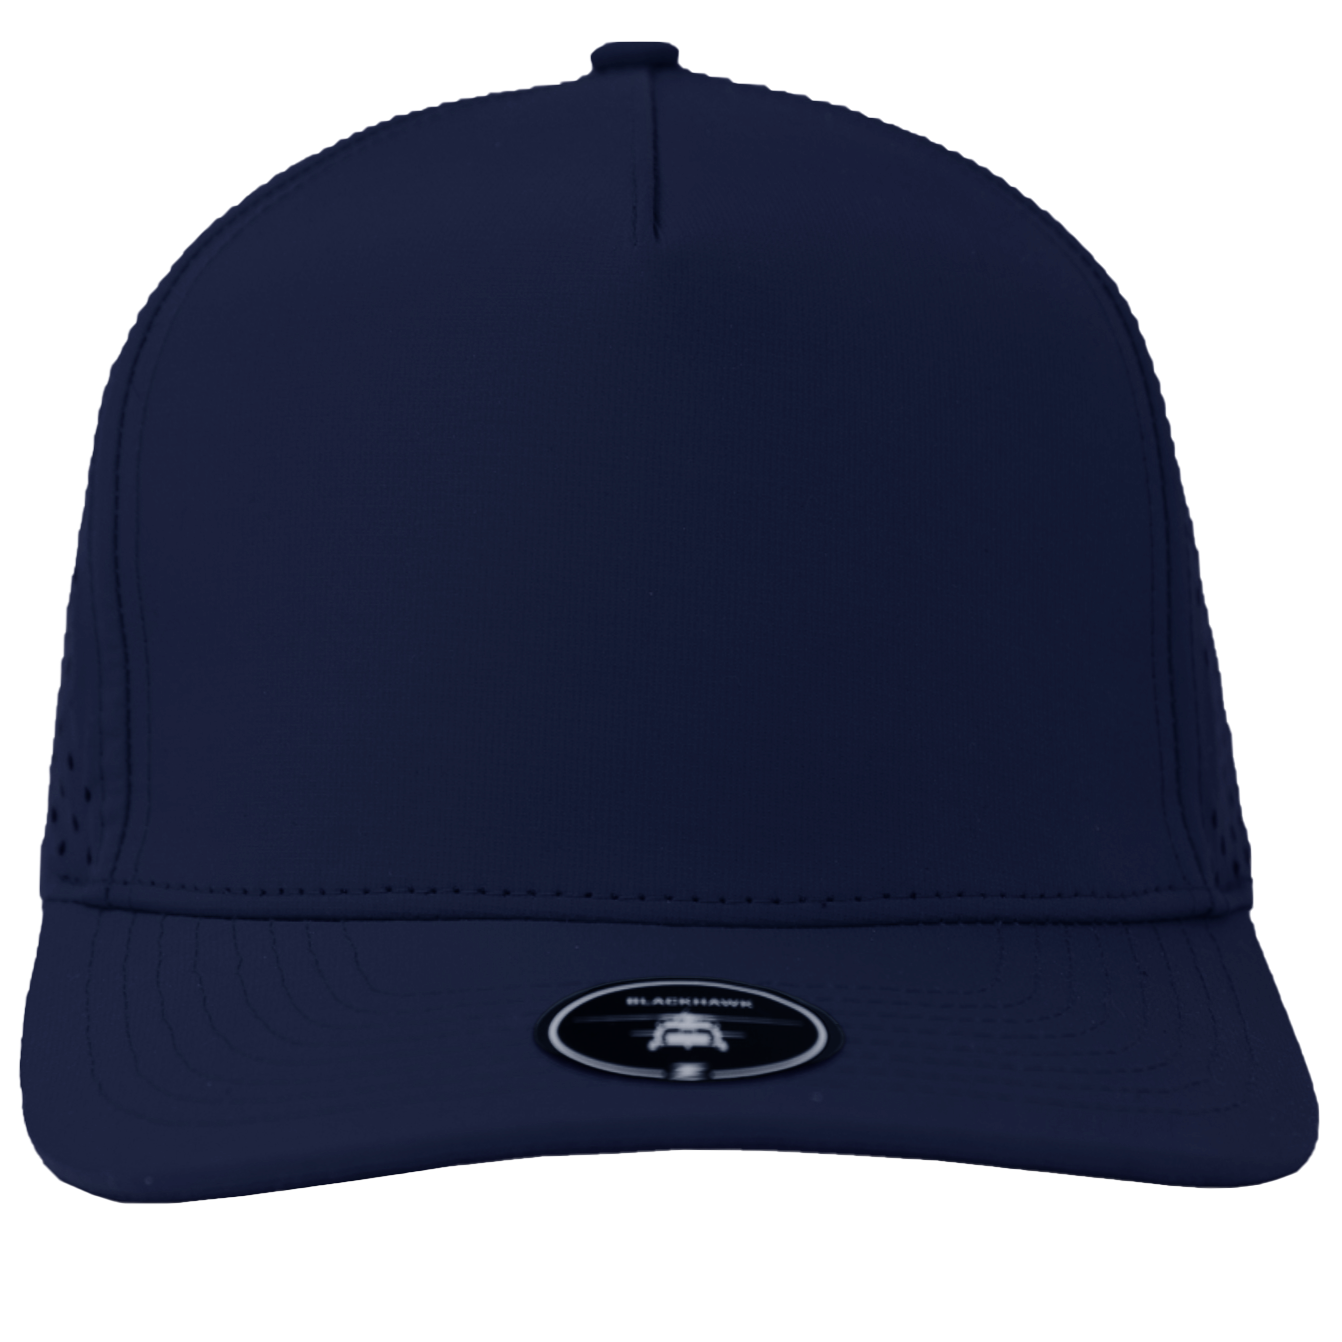 BLACKHAWK-Water Repellent hat-Zapped Headwear-navy-Zapped Headwea